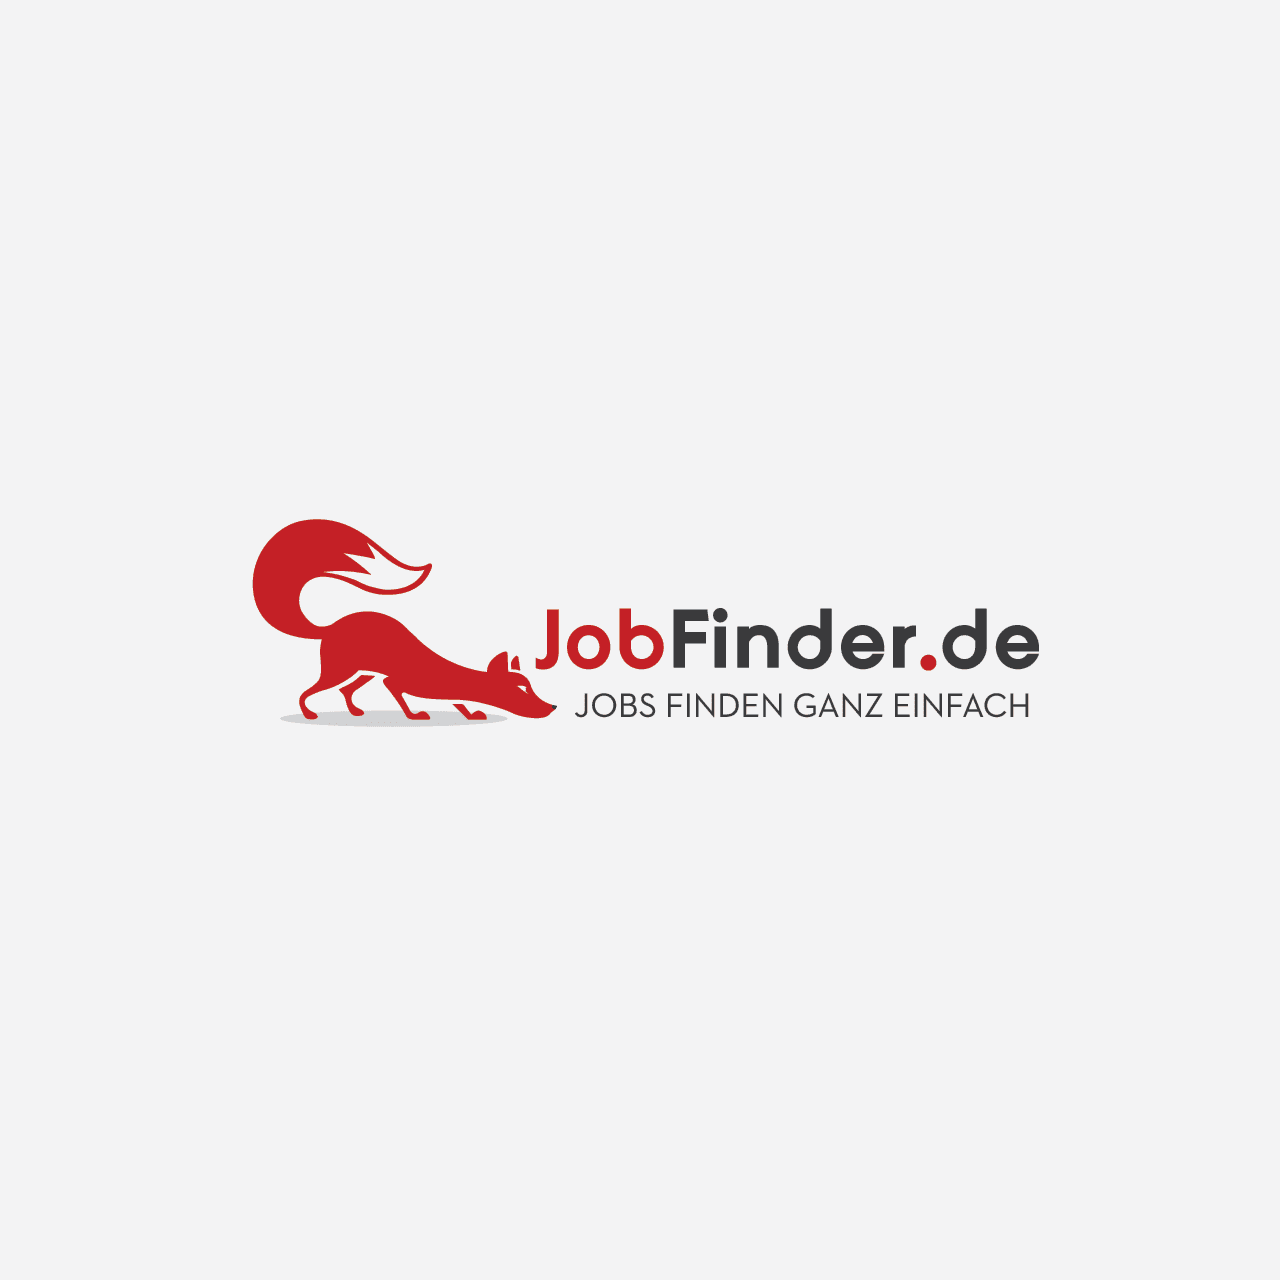 JobFinder